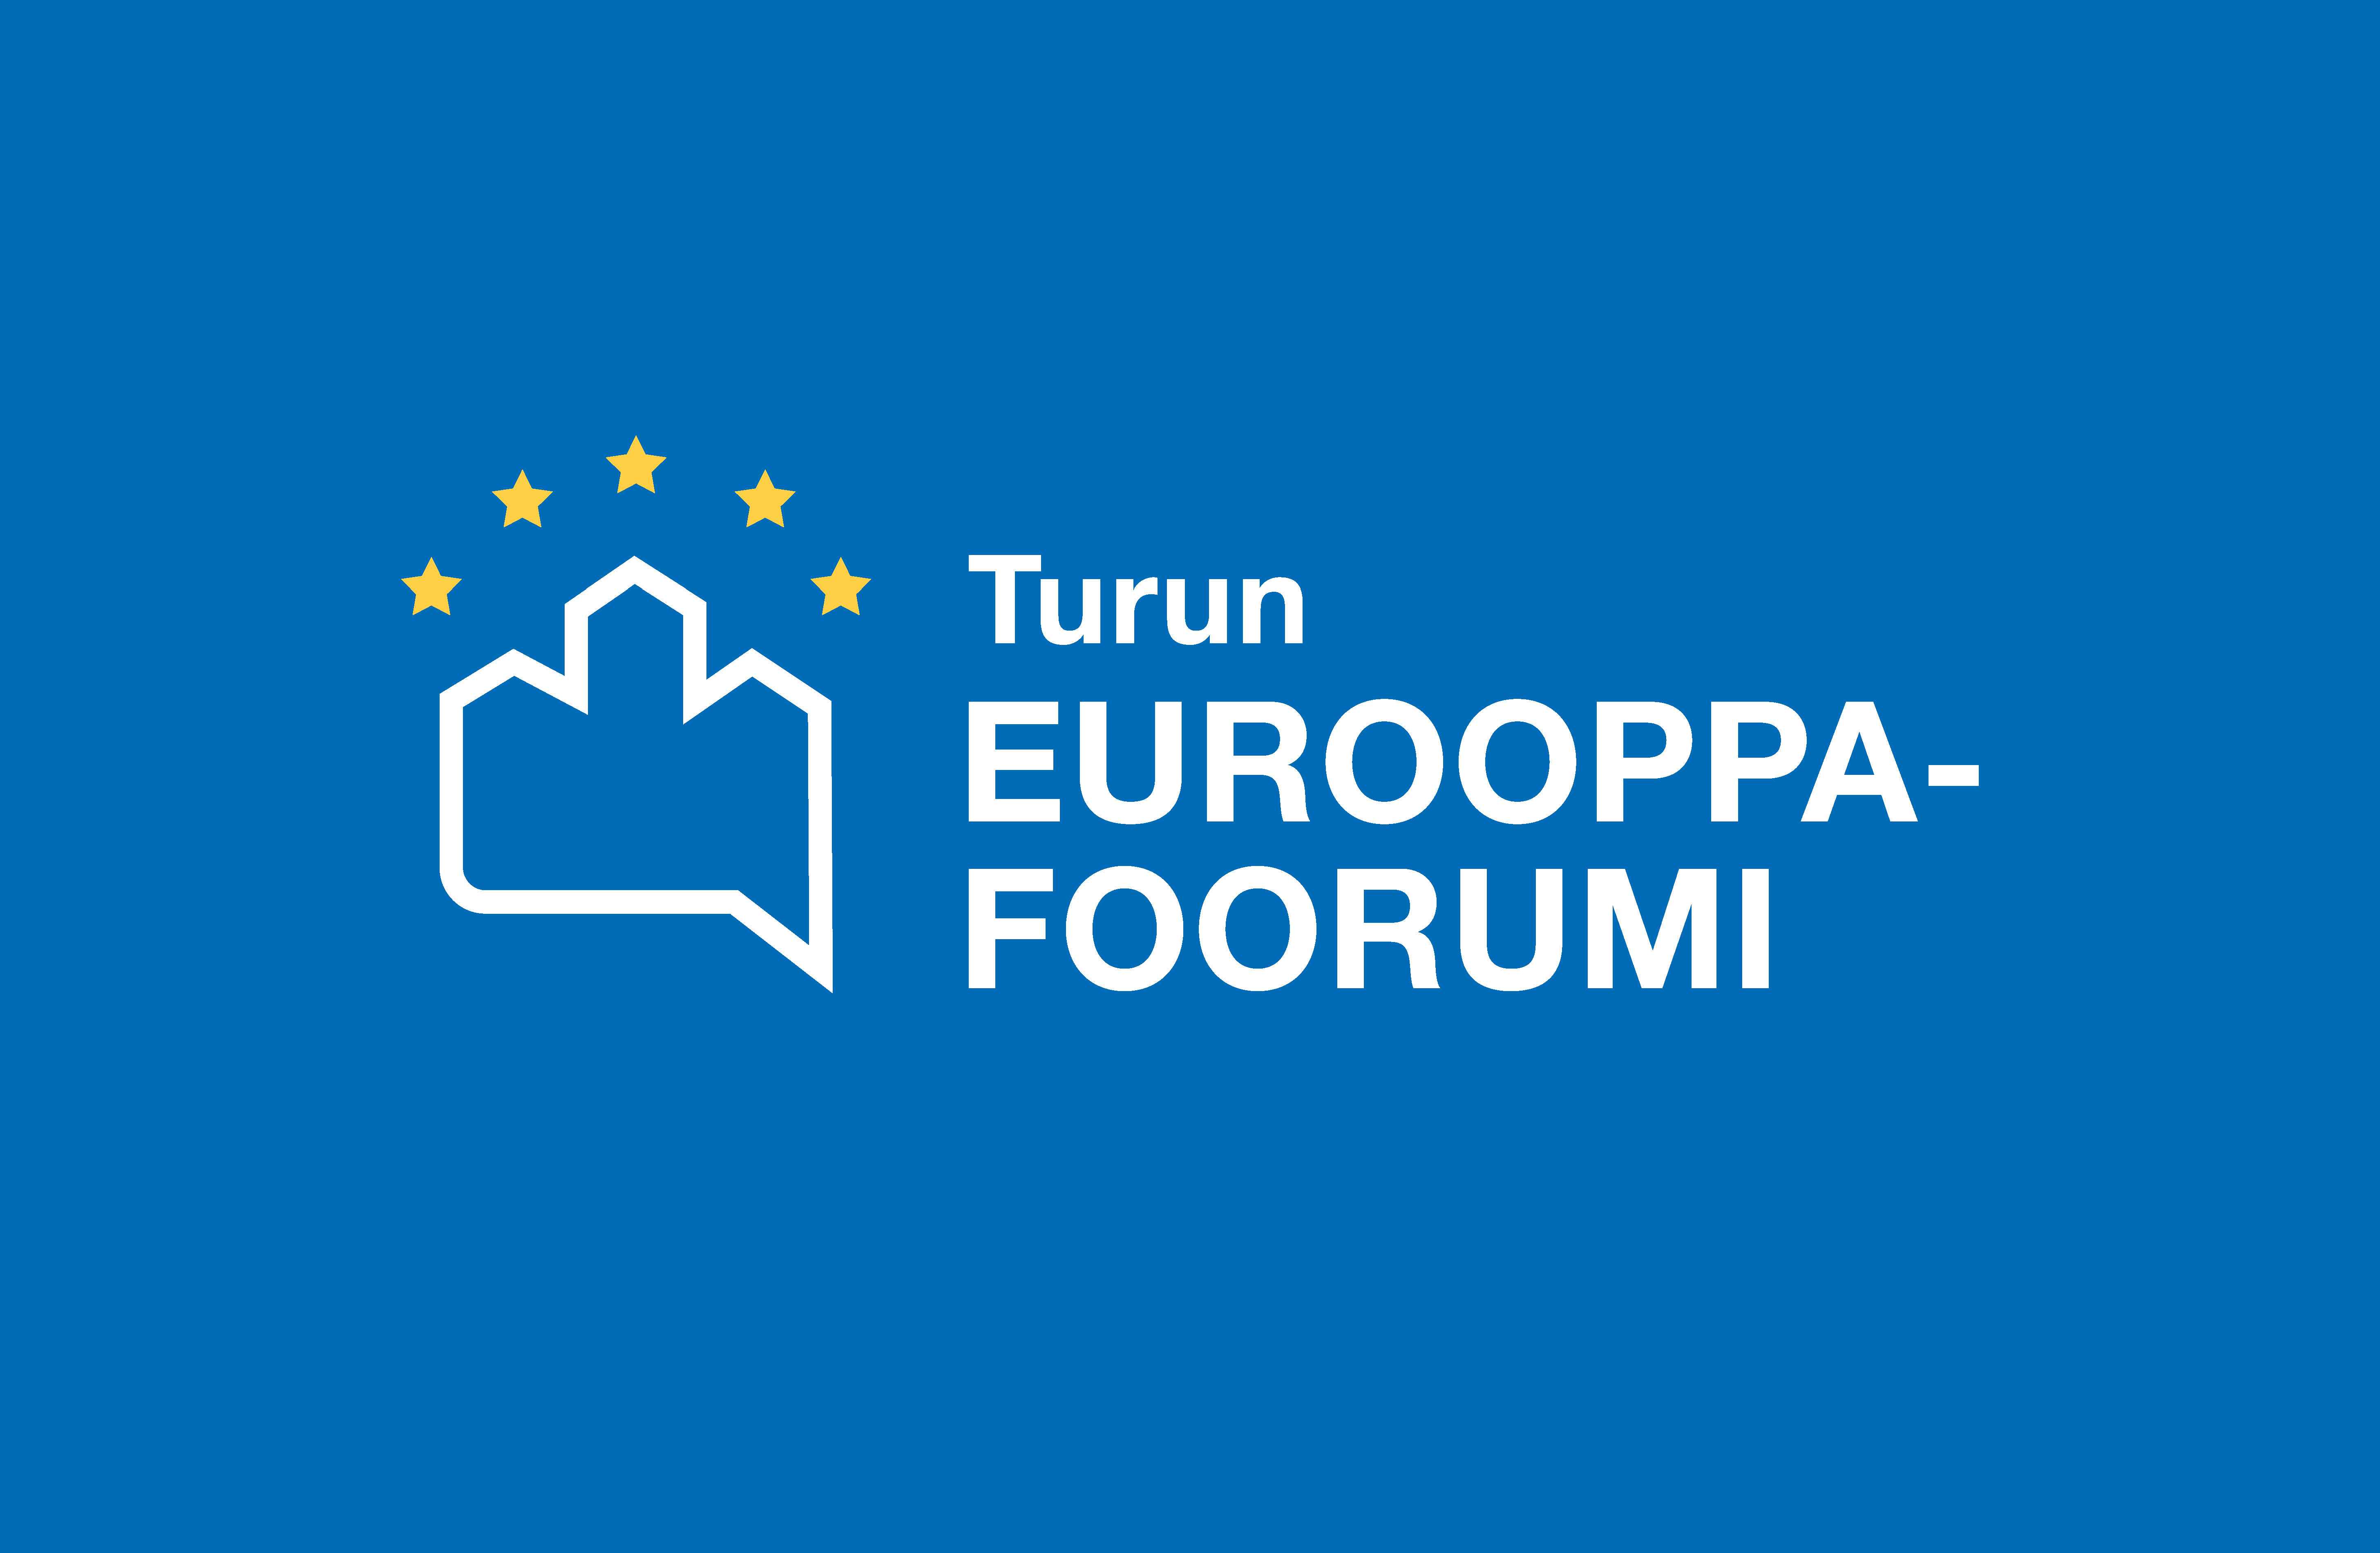 Turun Eurooppa-foorumin logo